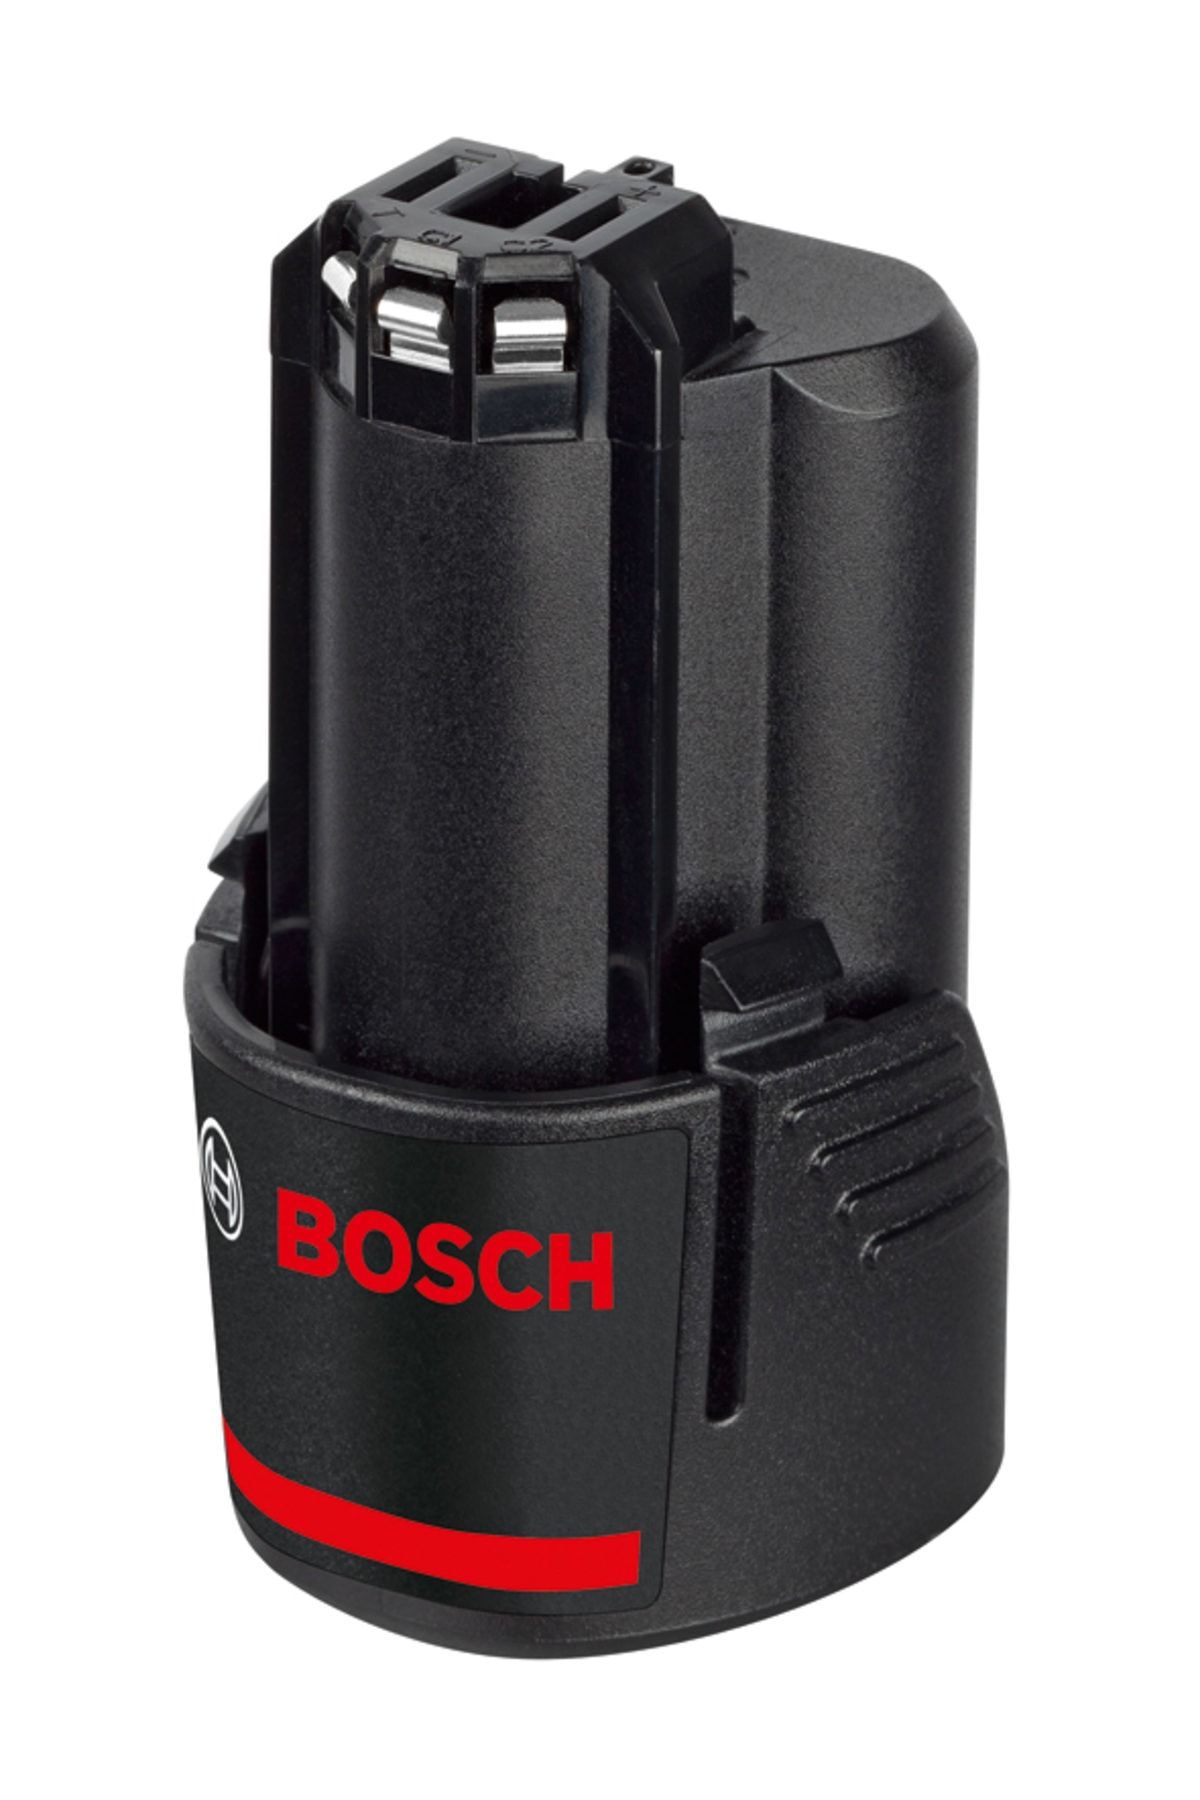 Bosch 12 V 2,0 Ah SD Li-Ion ECP Düz Akü